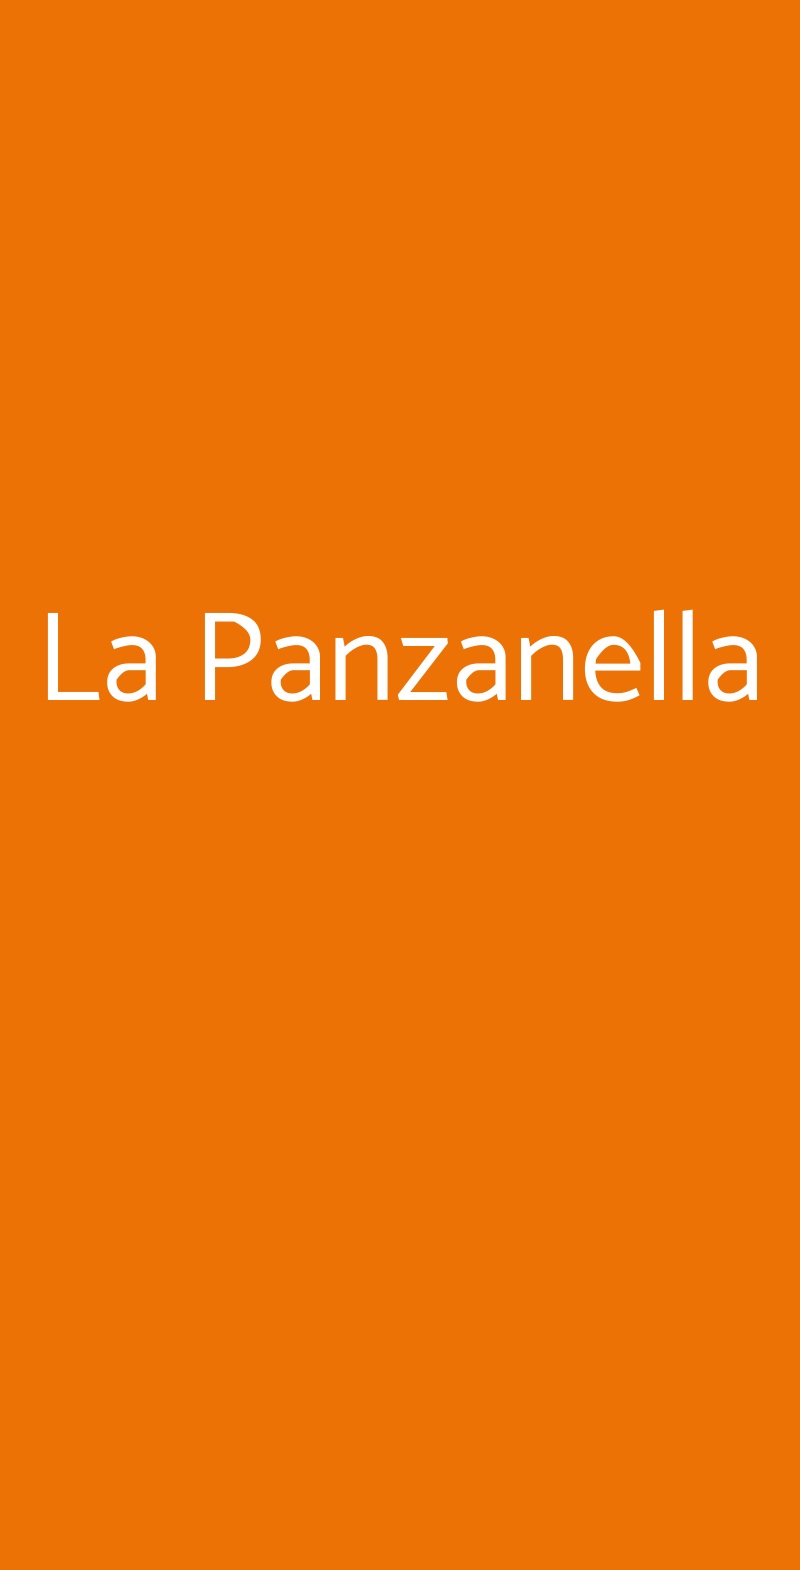 La Panzanella Fiumicino menù 1 pagina